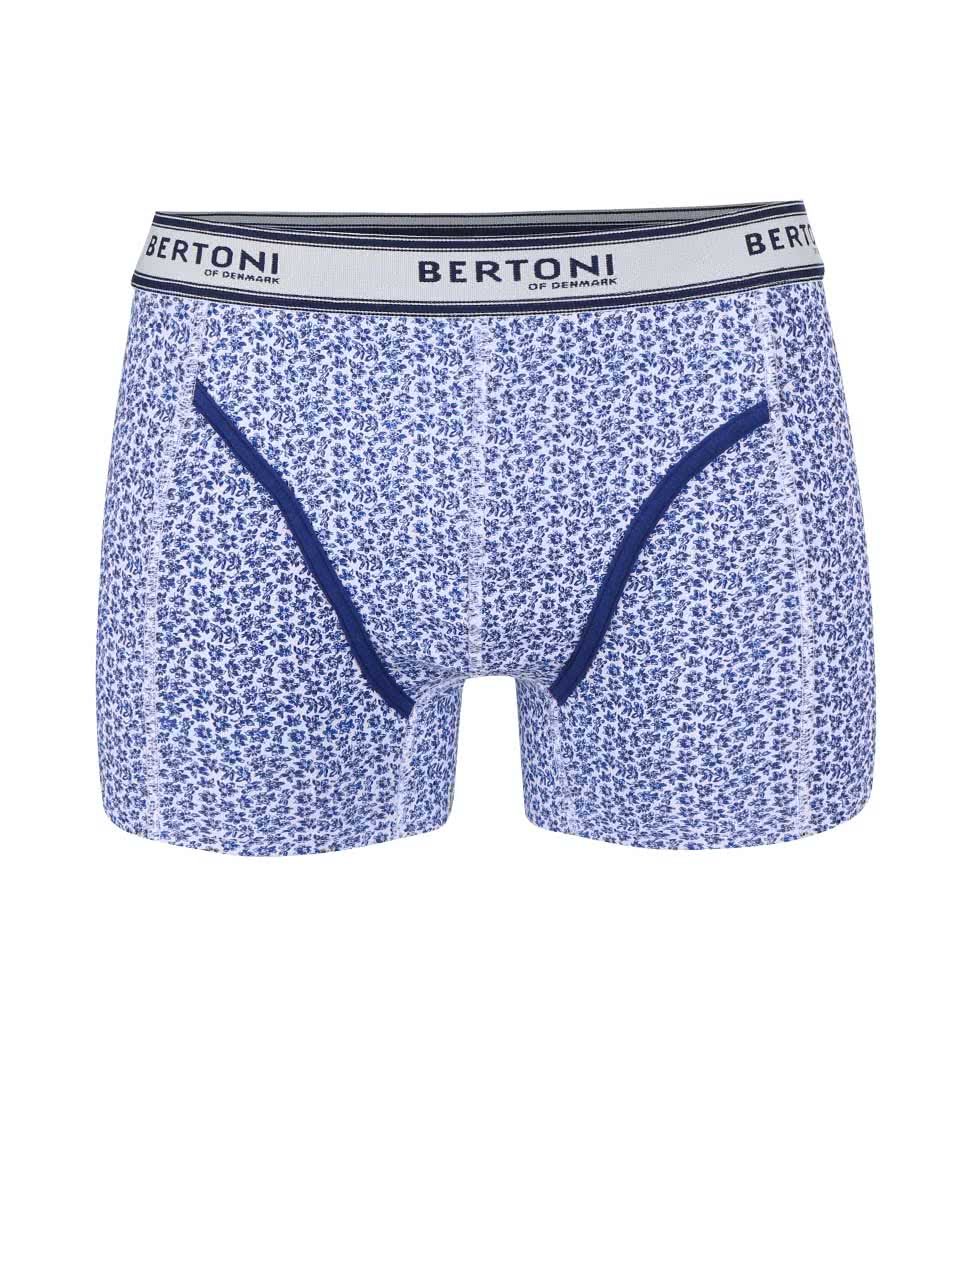 Modré vzorované boxerky Bertoni Vagn